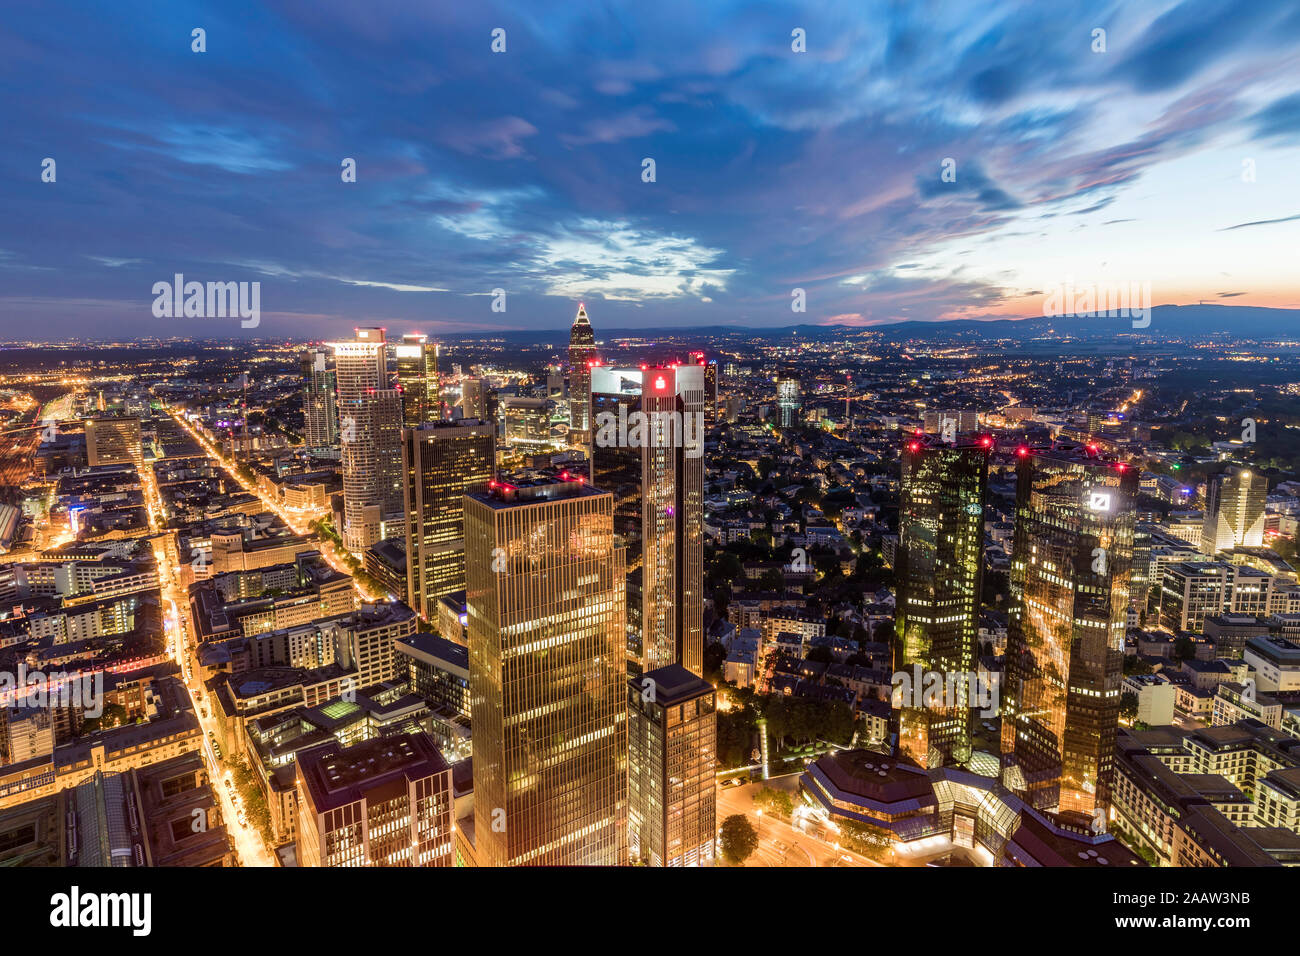 Cityscape contre ciel nuageux au soir, Francfort, Hesse, Allemagne Banque D'Images